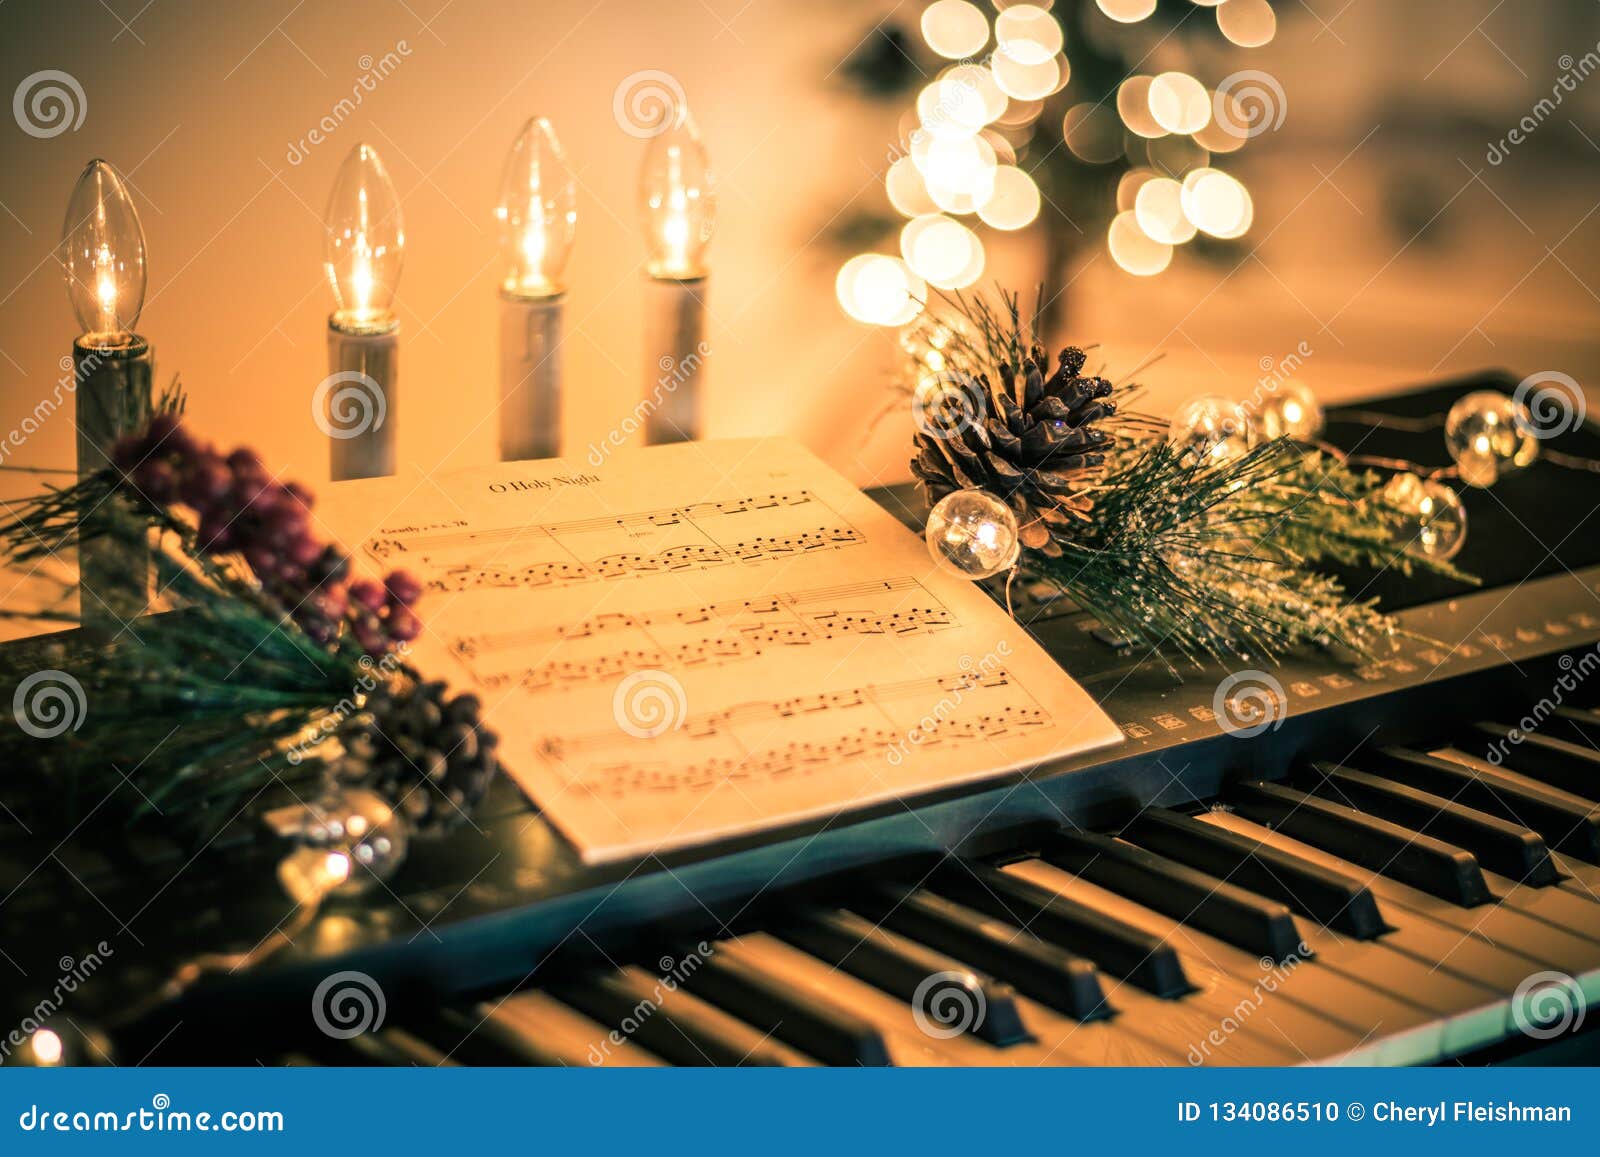 Hãy cùng đắm mình trong không khí Giáng Sinh ấm áp với những bản nhạc nền nhẹ nhàng. Một lần lắng nghe, bạn sẽ bất ngờ với tác động tích cực và cảm xúc mà âm nhạc mang lại. Click vào hình ảnh để thưởng thức những giai điệu đầy ý nghĩa!